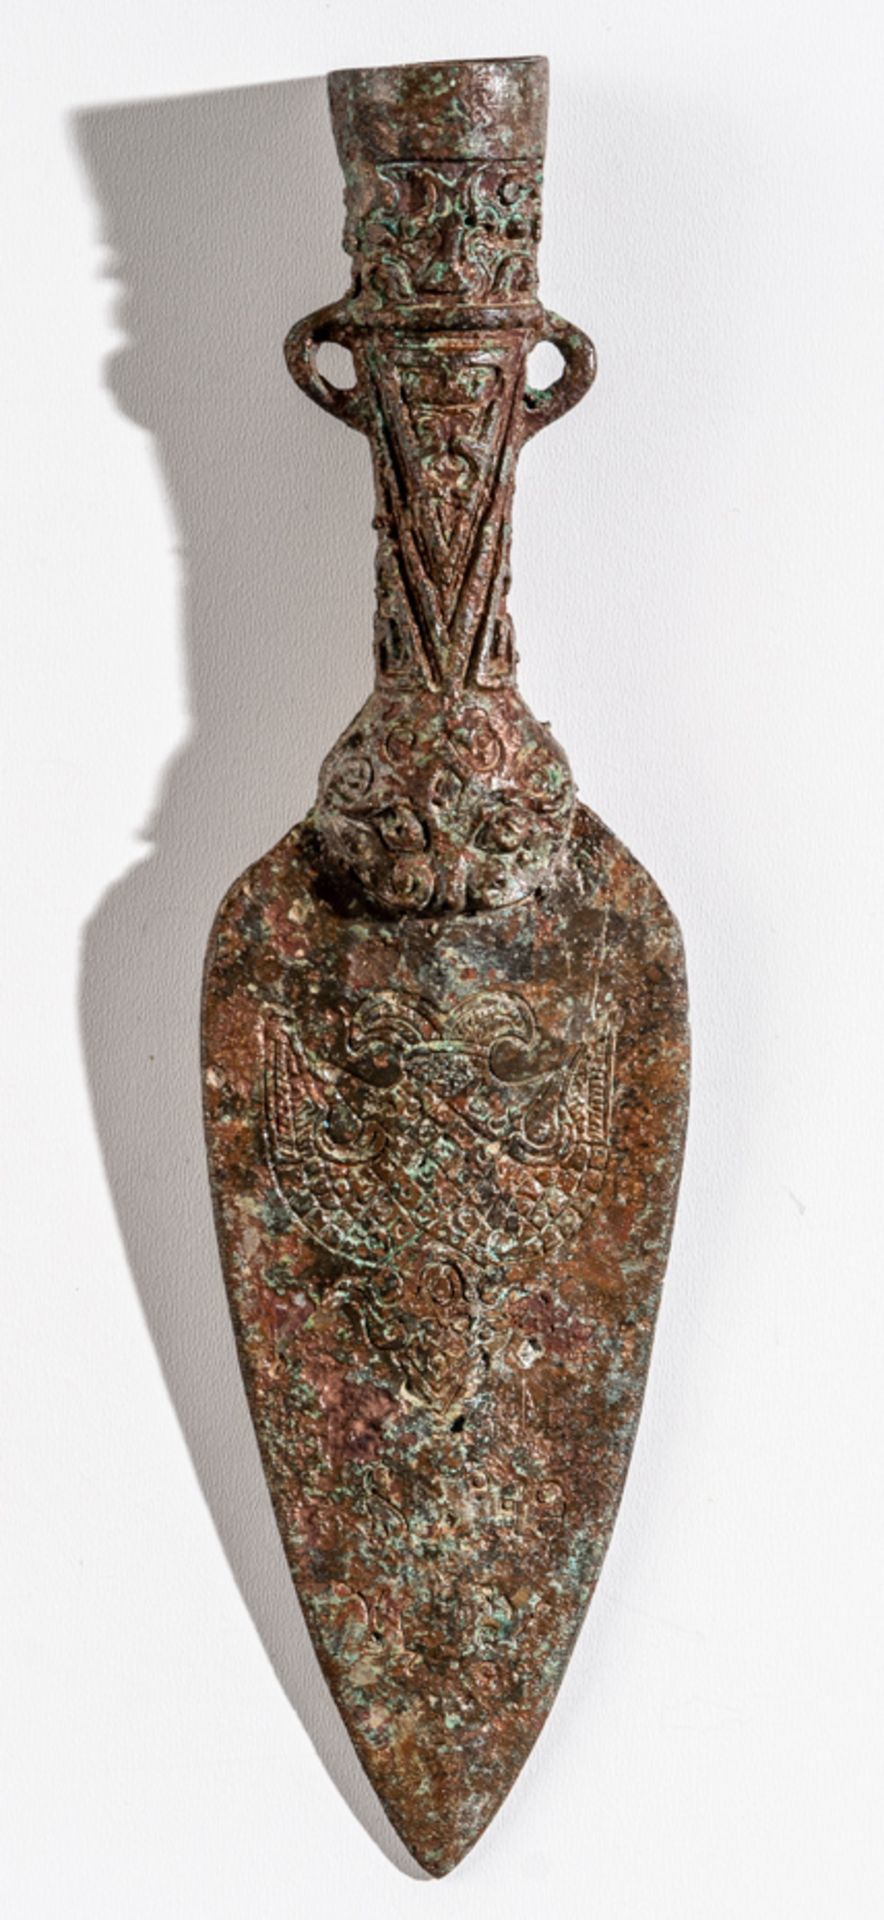 FRÜHE CHINESISCHE SPEERSPITZE, Bronze, ca. 1800-900 v. Chr. - Bild 2 aus 2